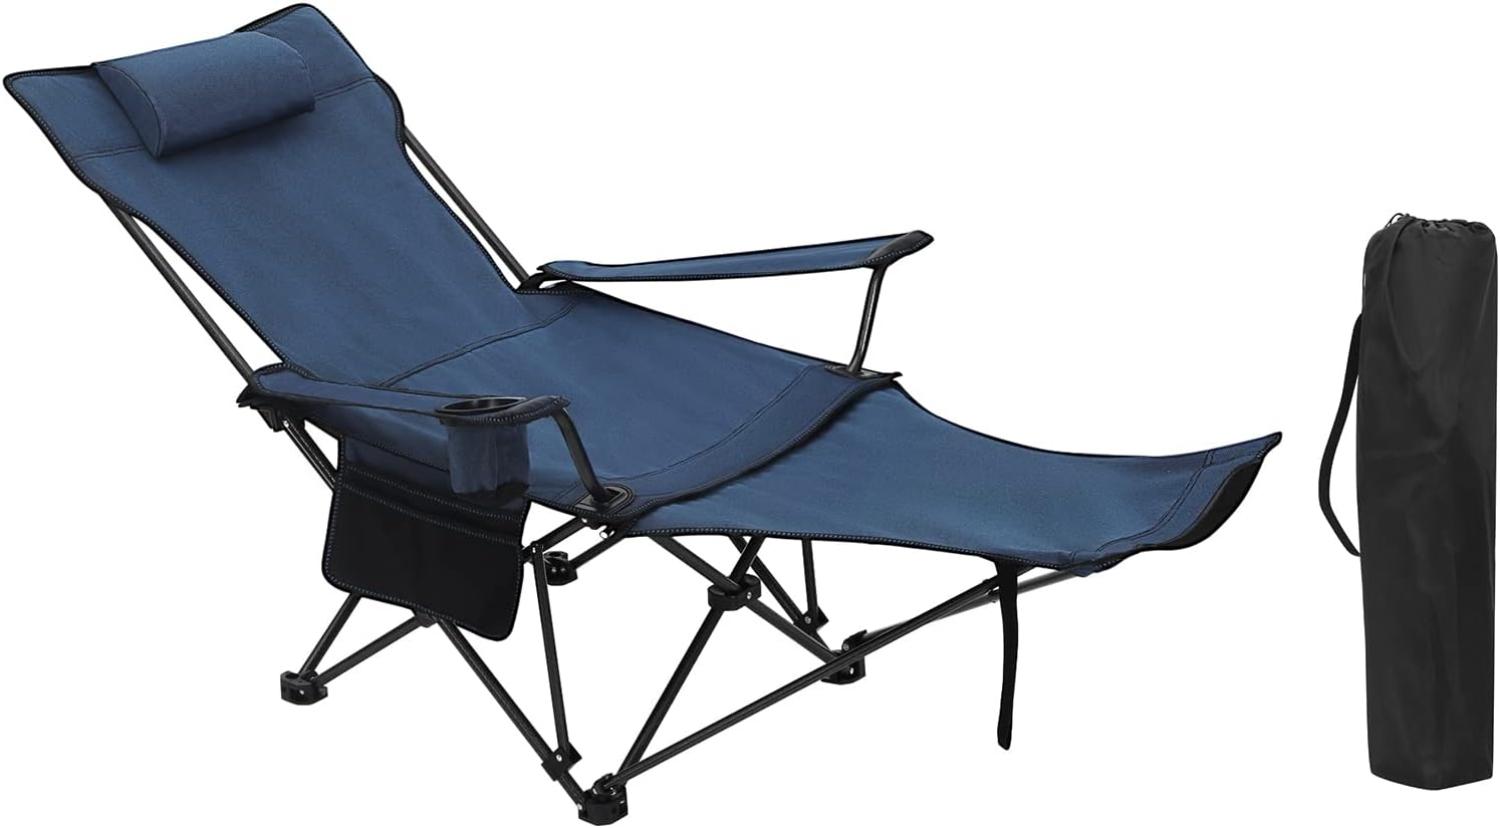 WOLTU Campingstuhl klappbarer Angelstuhl ultraleichter Stuhl Liegestuhl mit Lehne Fußstütze Getränkehalter Aufbewahrungstasche Sonnenstuhl belastbar 150 kg Faltstuhl aus Oxford-Gewebe Blau CPS8148bl Bild 1